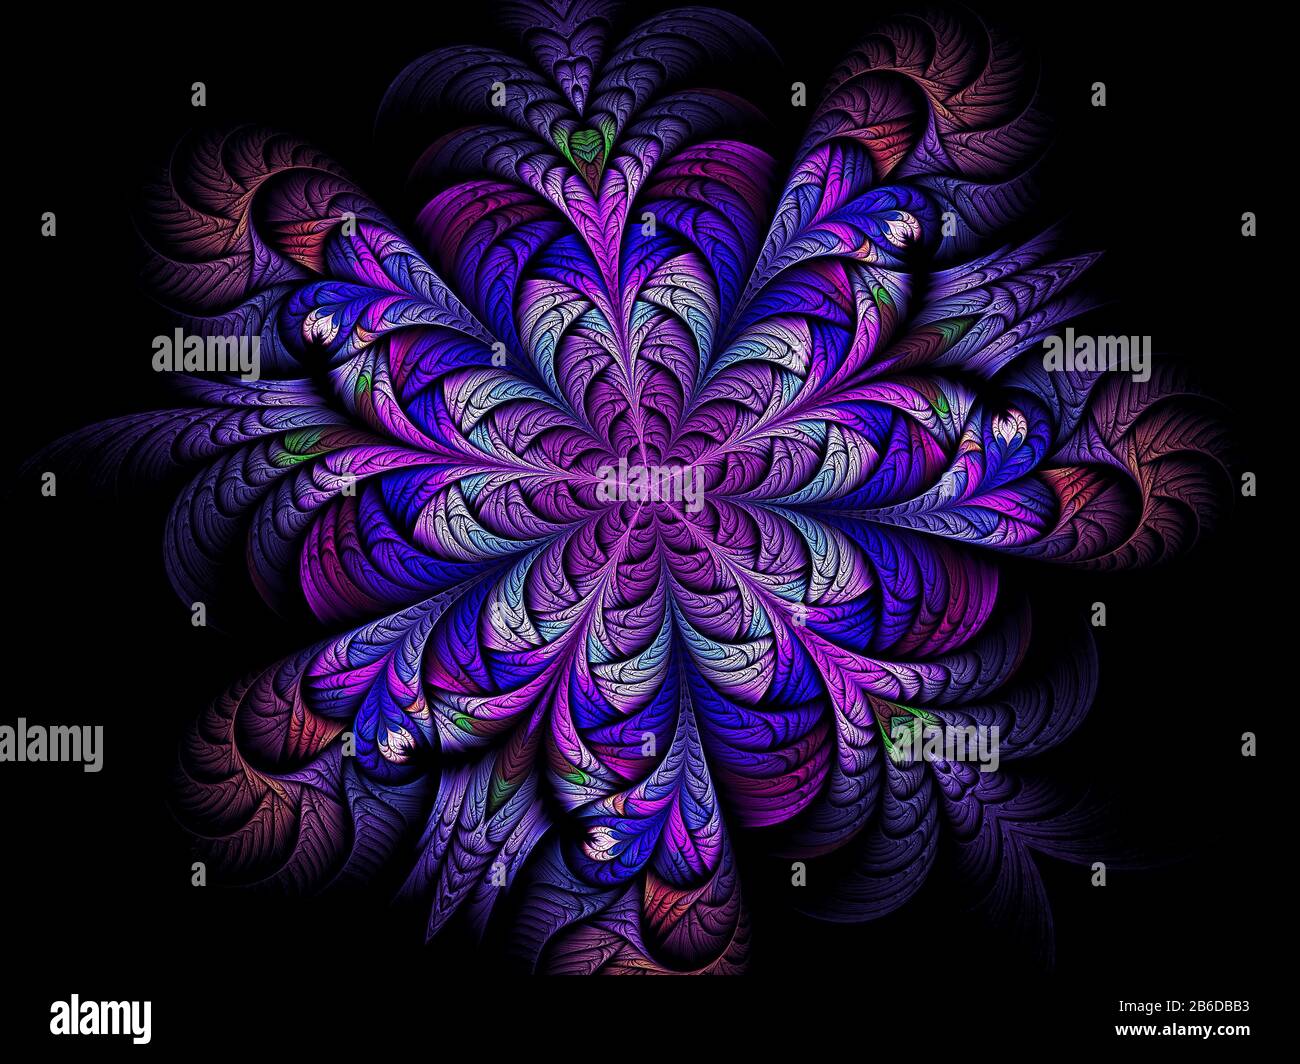 Abstrakte Blume mit geschichteten Kronblättern - digital generiertes Bild Stockfoto